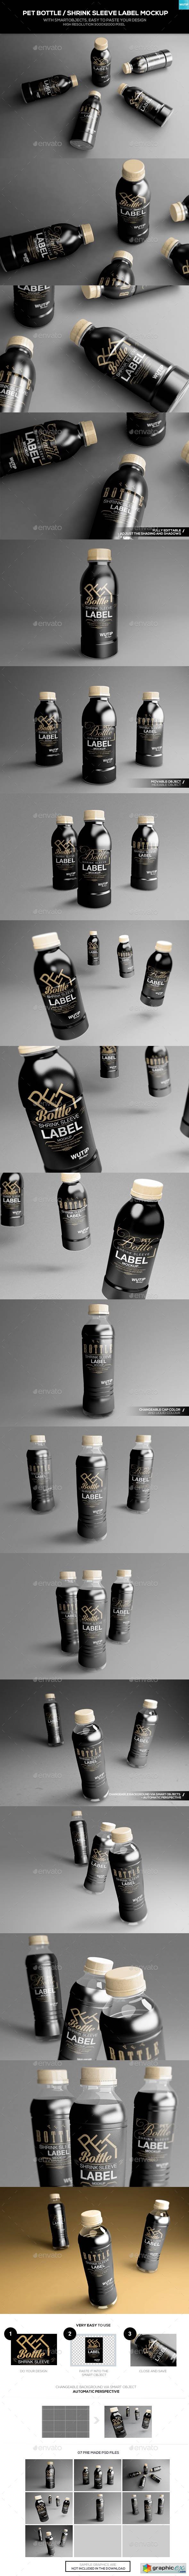 PET Bottle Shrink Sleeve Label Mockup